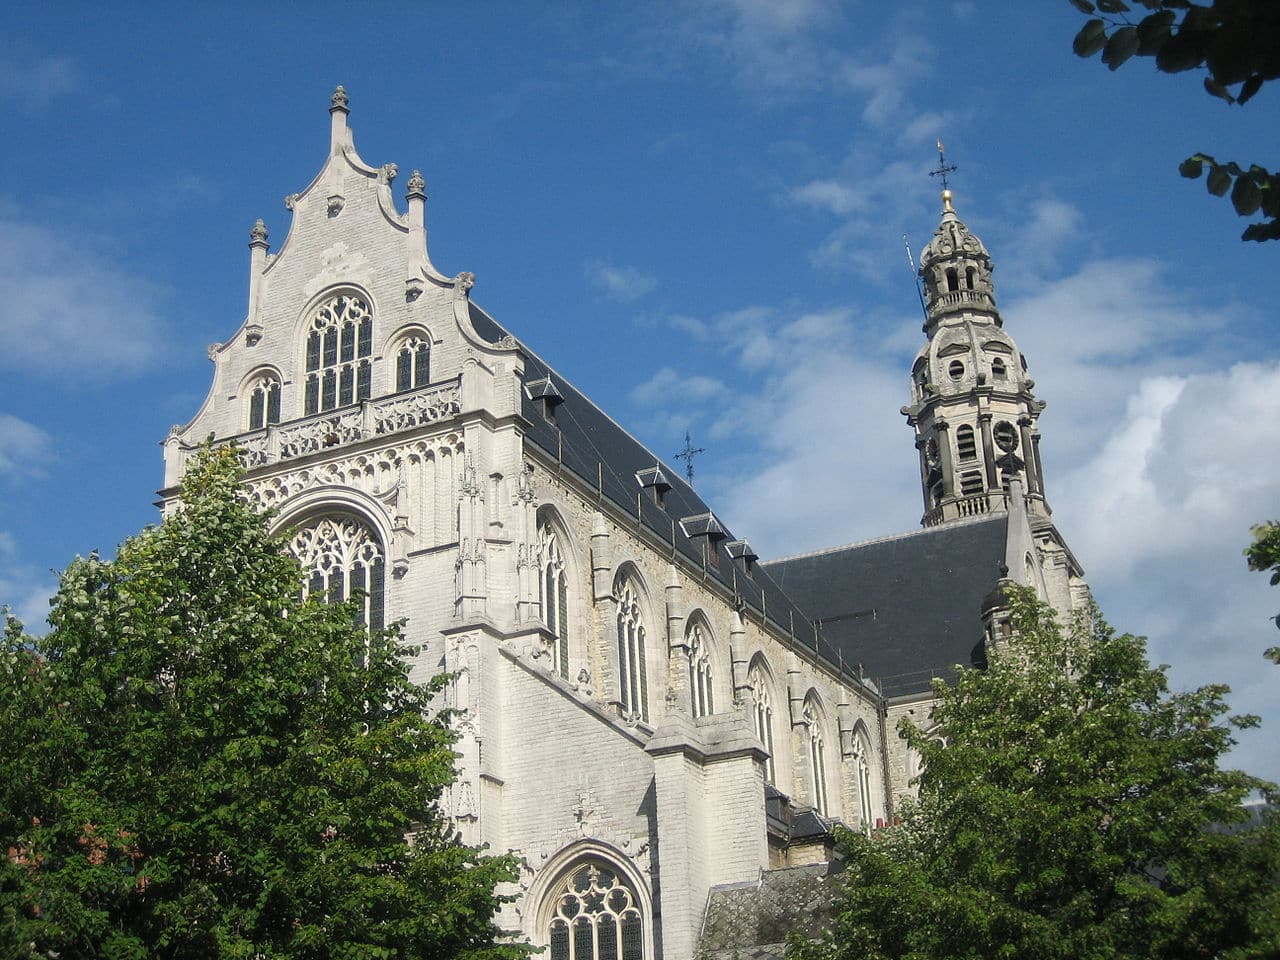 St. Paul's Church Antwerp